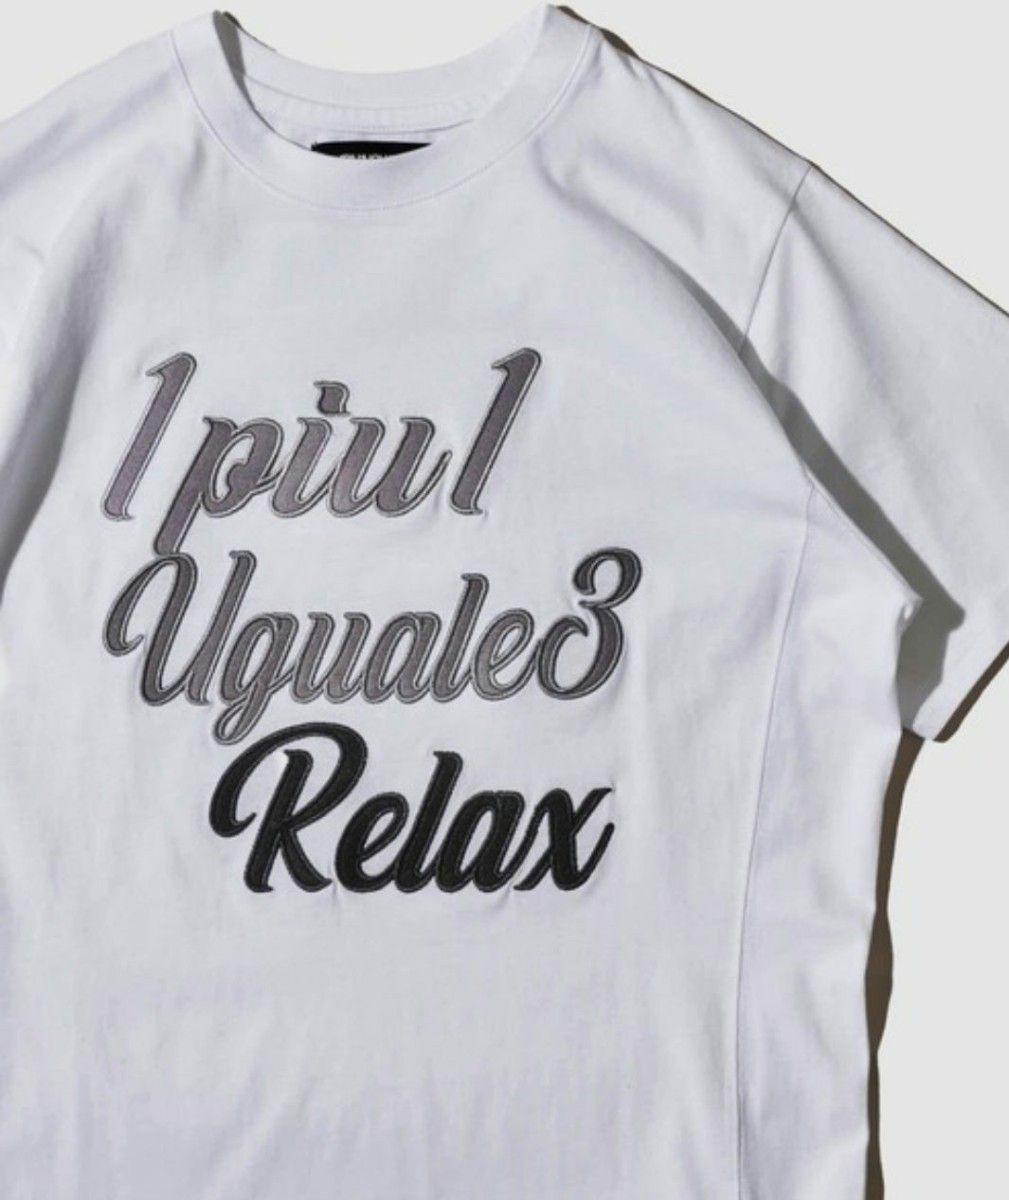 【新品未開封】1PIU1UGUALE3 RELAX 白 刺繍ロゴ半袖Tシャツ グラフィックプリントTシャツ Lサイズ